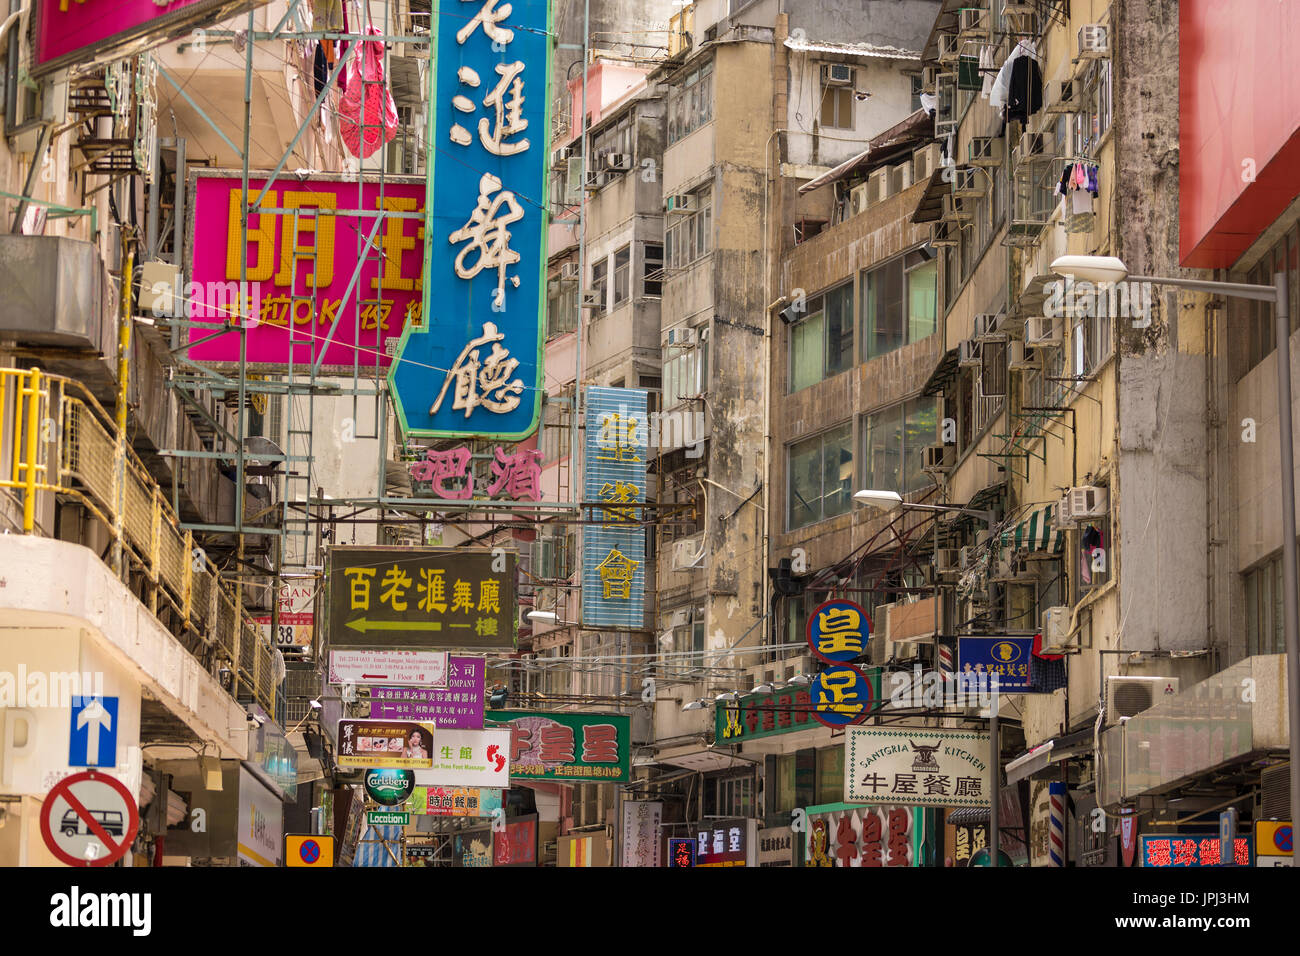 Cacofonía de chino e inglés signos en edificios ruinosos en la sección comercial de Kowloon, Hong Kong Foto de stock